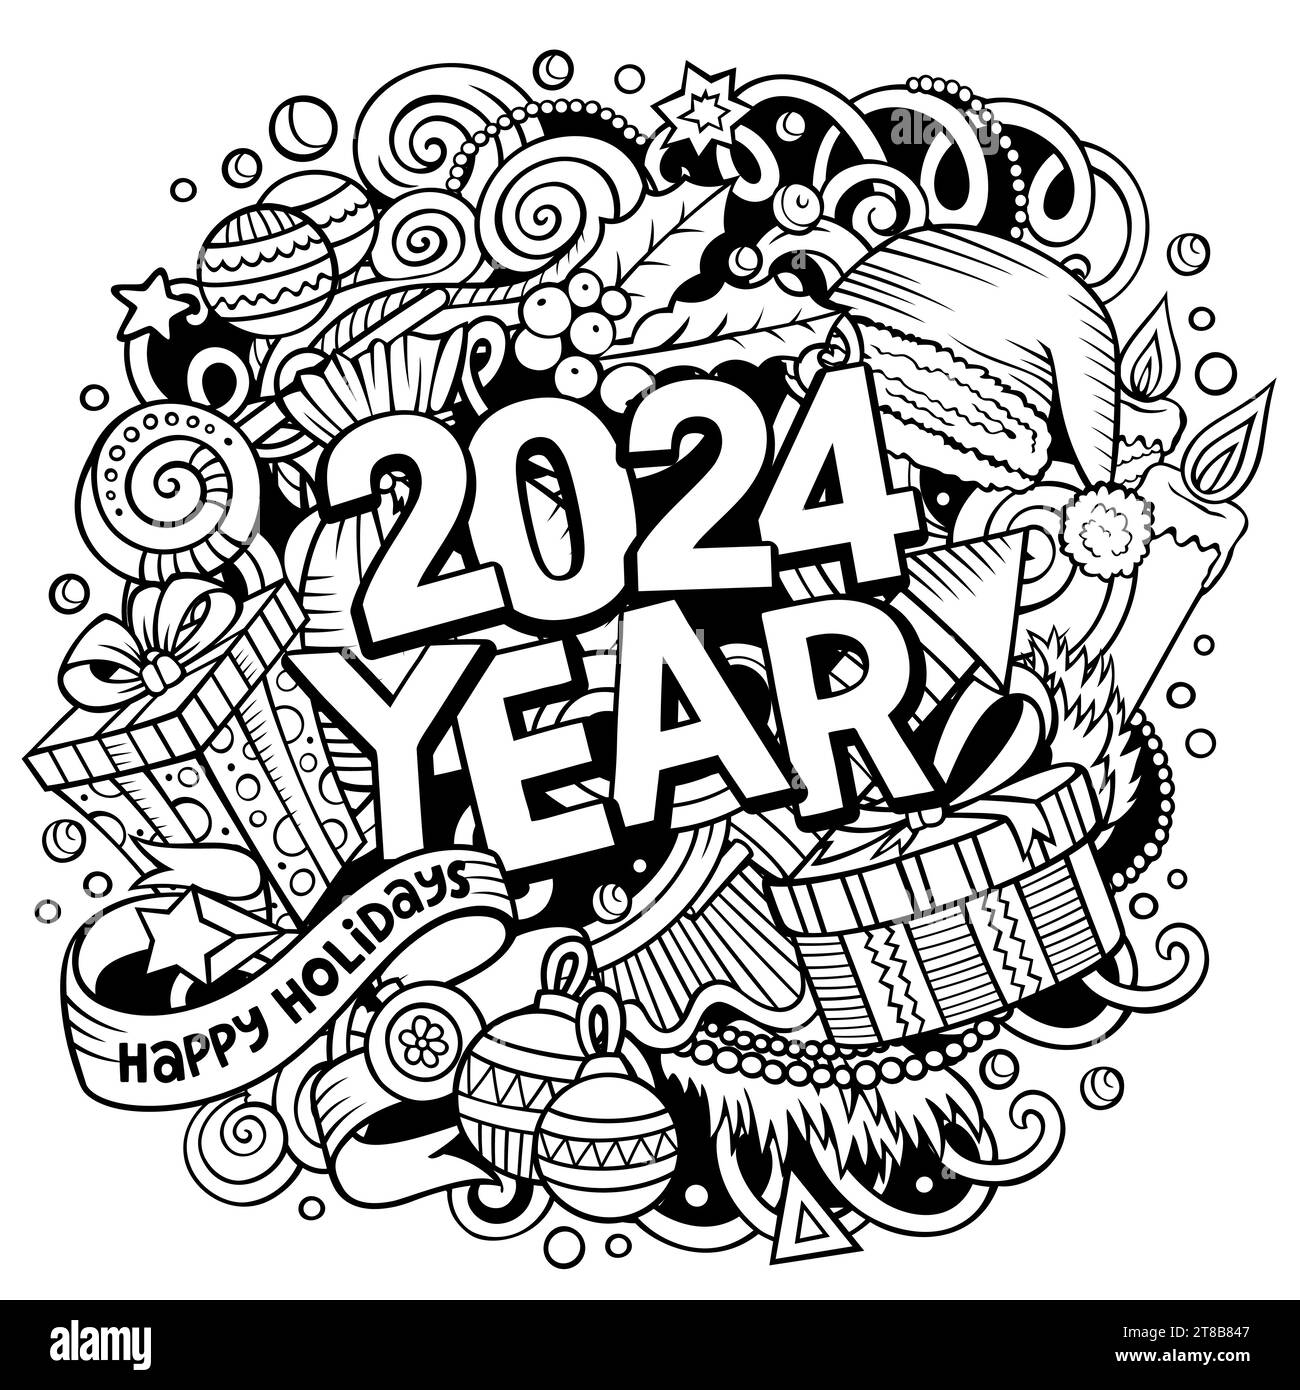 Abbildung 2024 Kritzeleien. Poster mit Objekten und Elementen zum Neujahr Stock Vektor